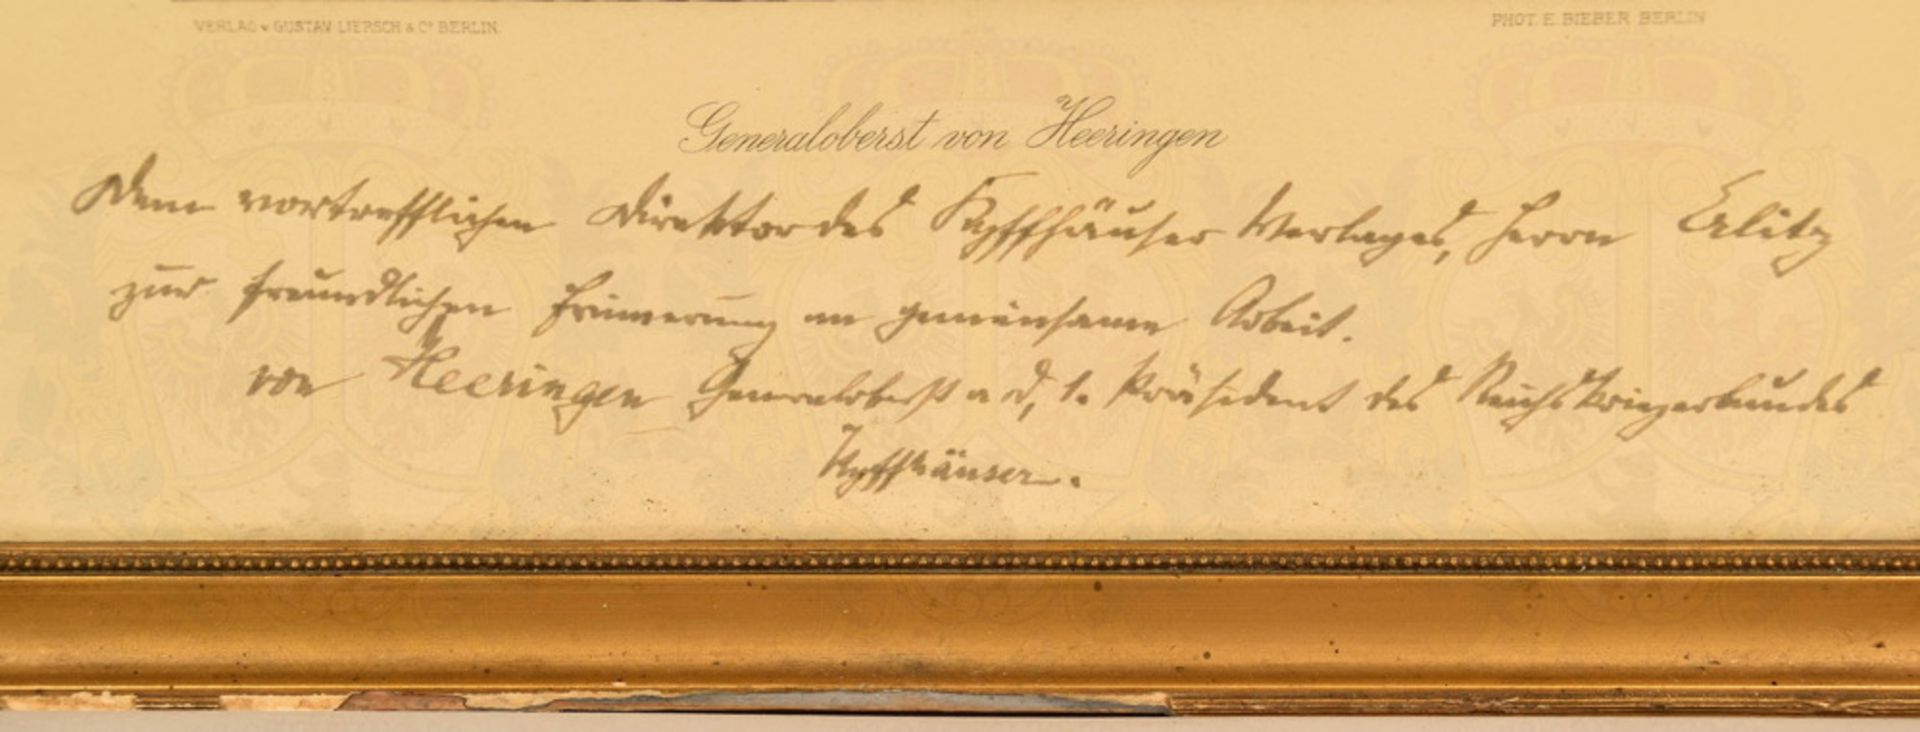 Autograph Prussian General Josias von Heeringen - Image 2 of 3